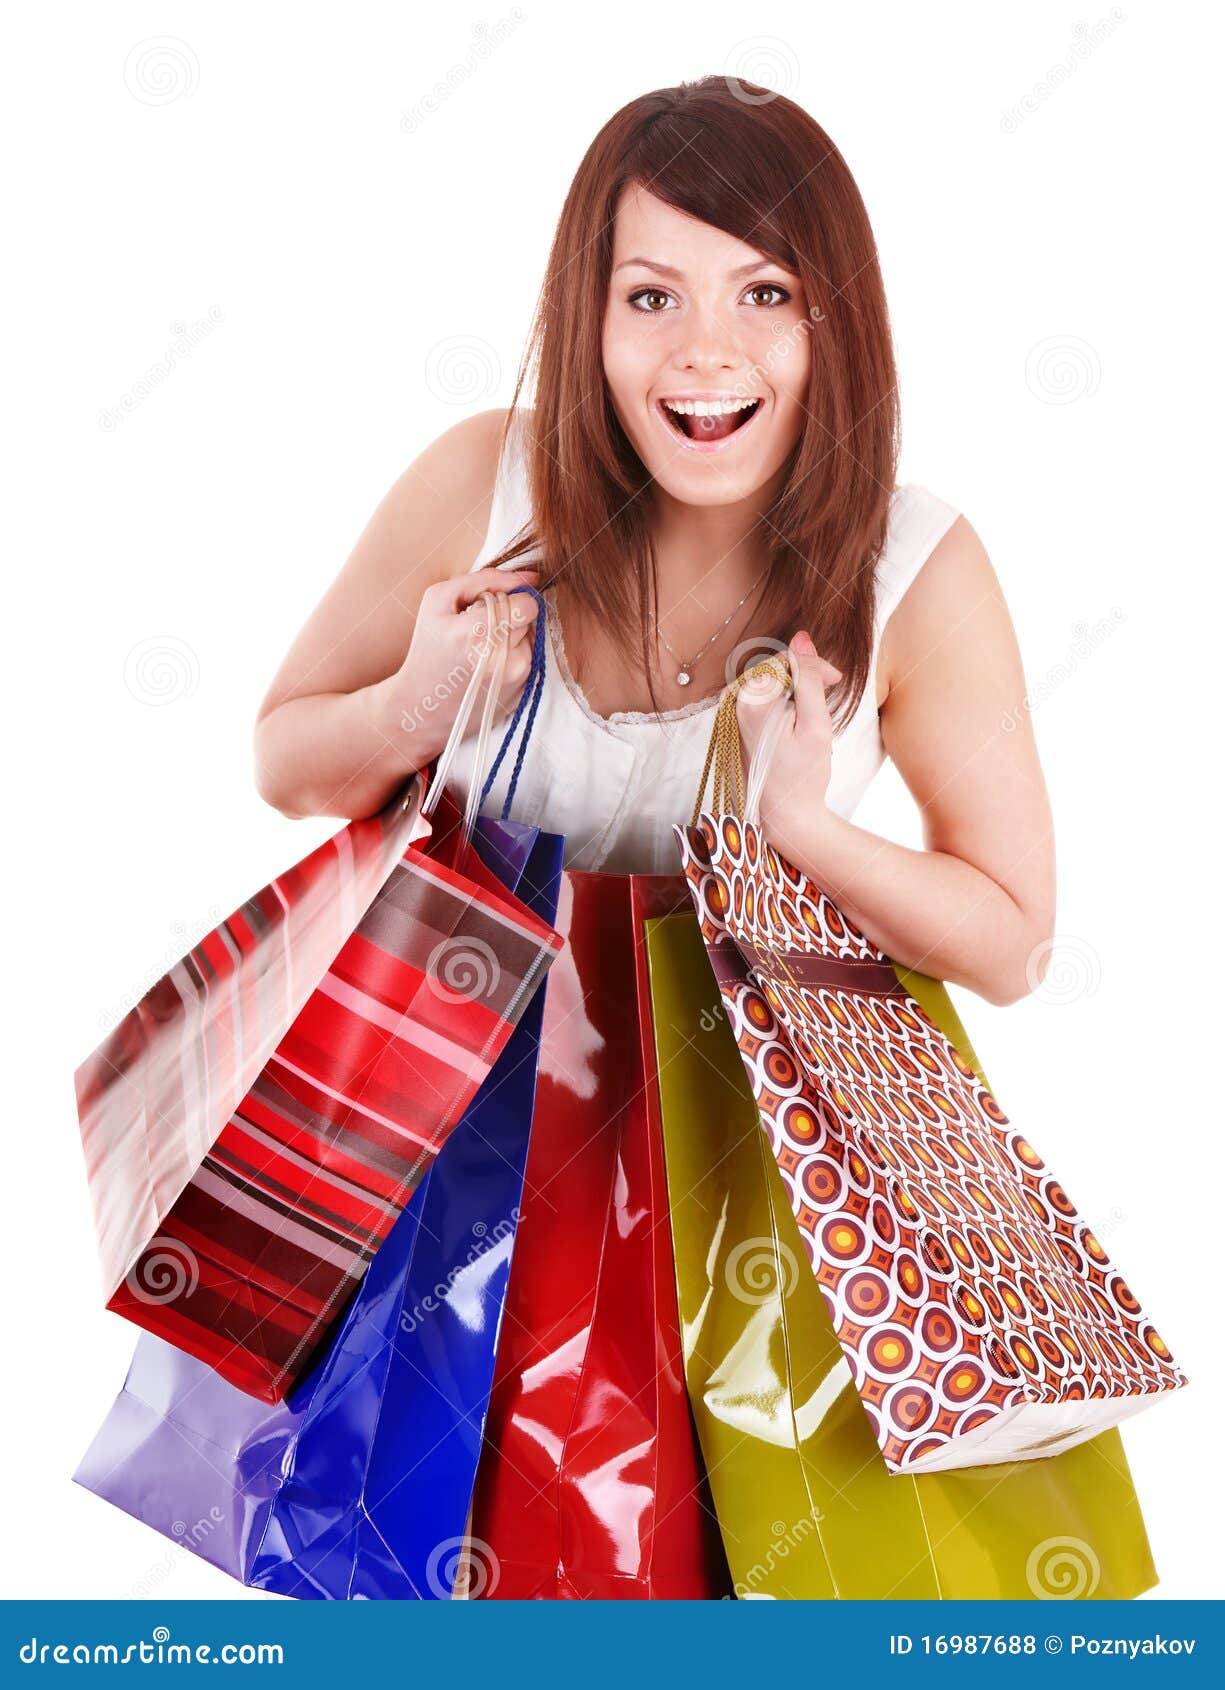 Mädchenholding-Gruppen-Einkaufstasche. Farbige Gruppen-Einkaufstasche der jungen Frau Holding. Getrennt